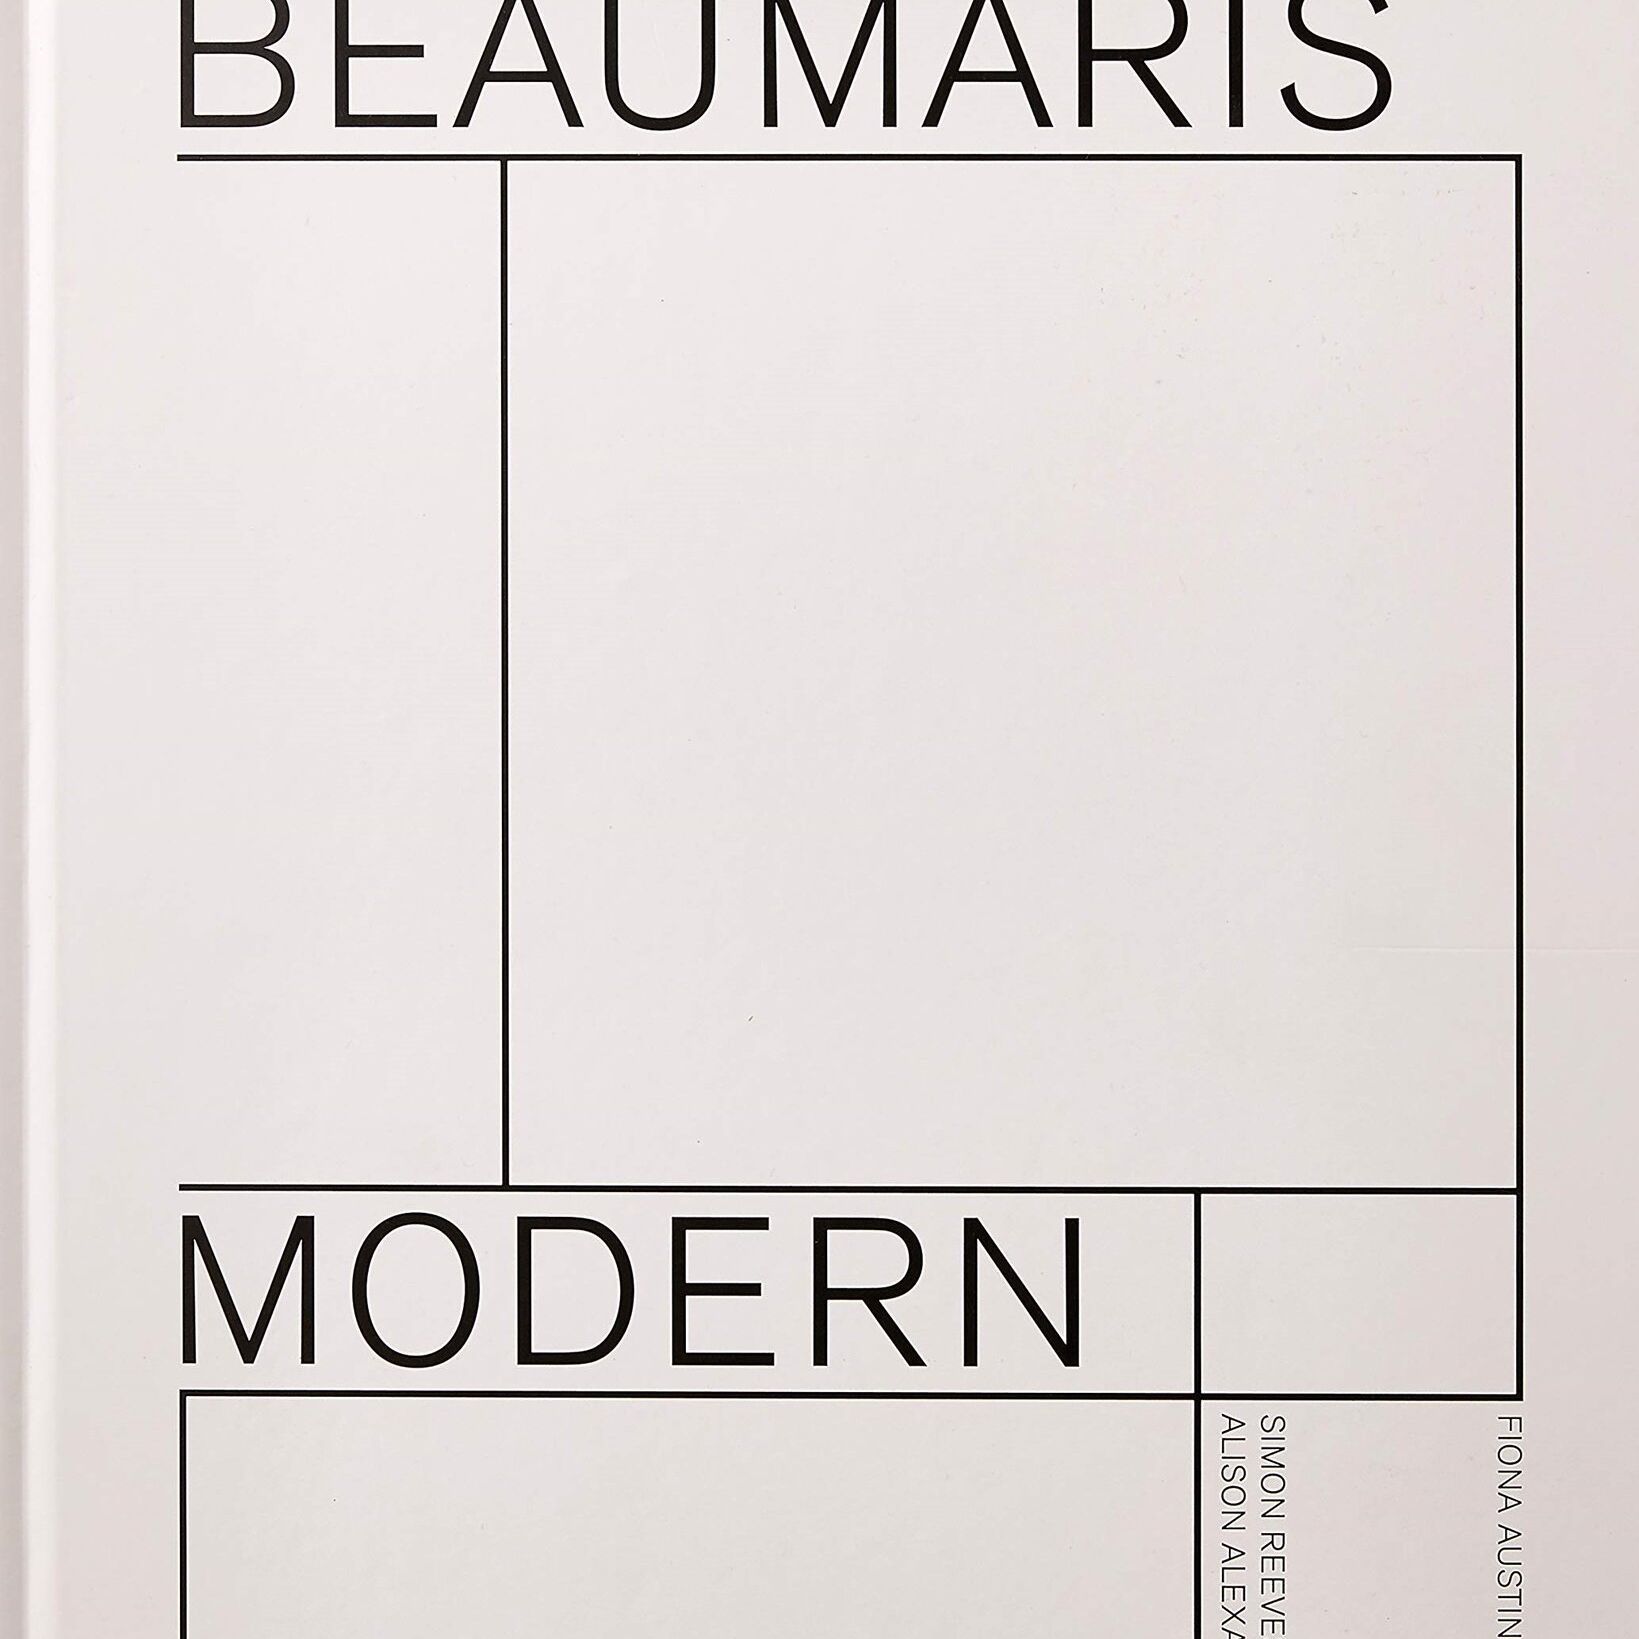 Book: Beaumaris Modern- Modernist Homes in Beaumaris